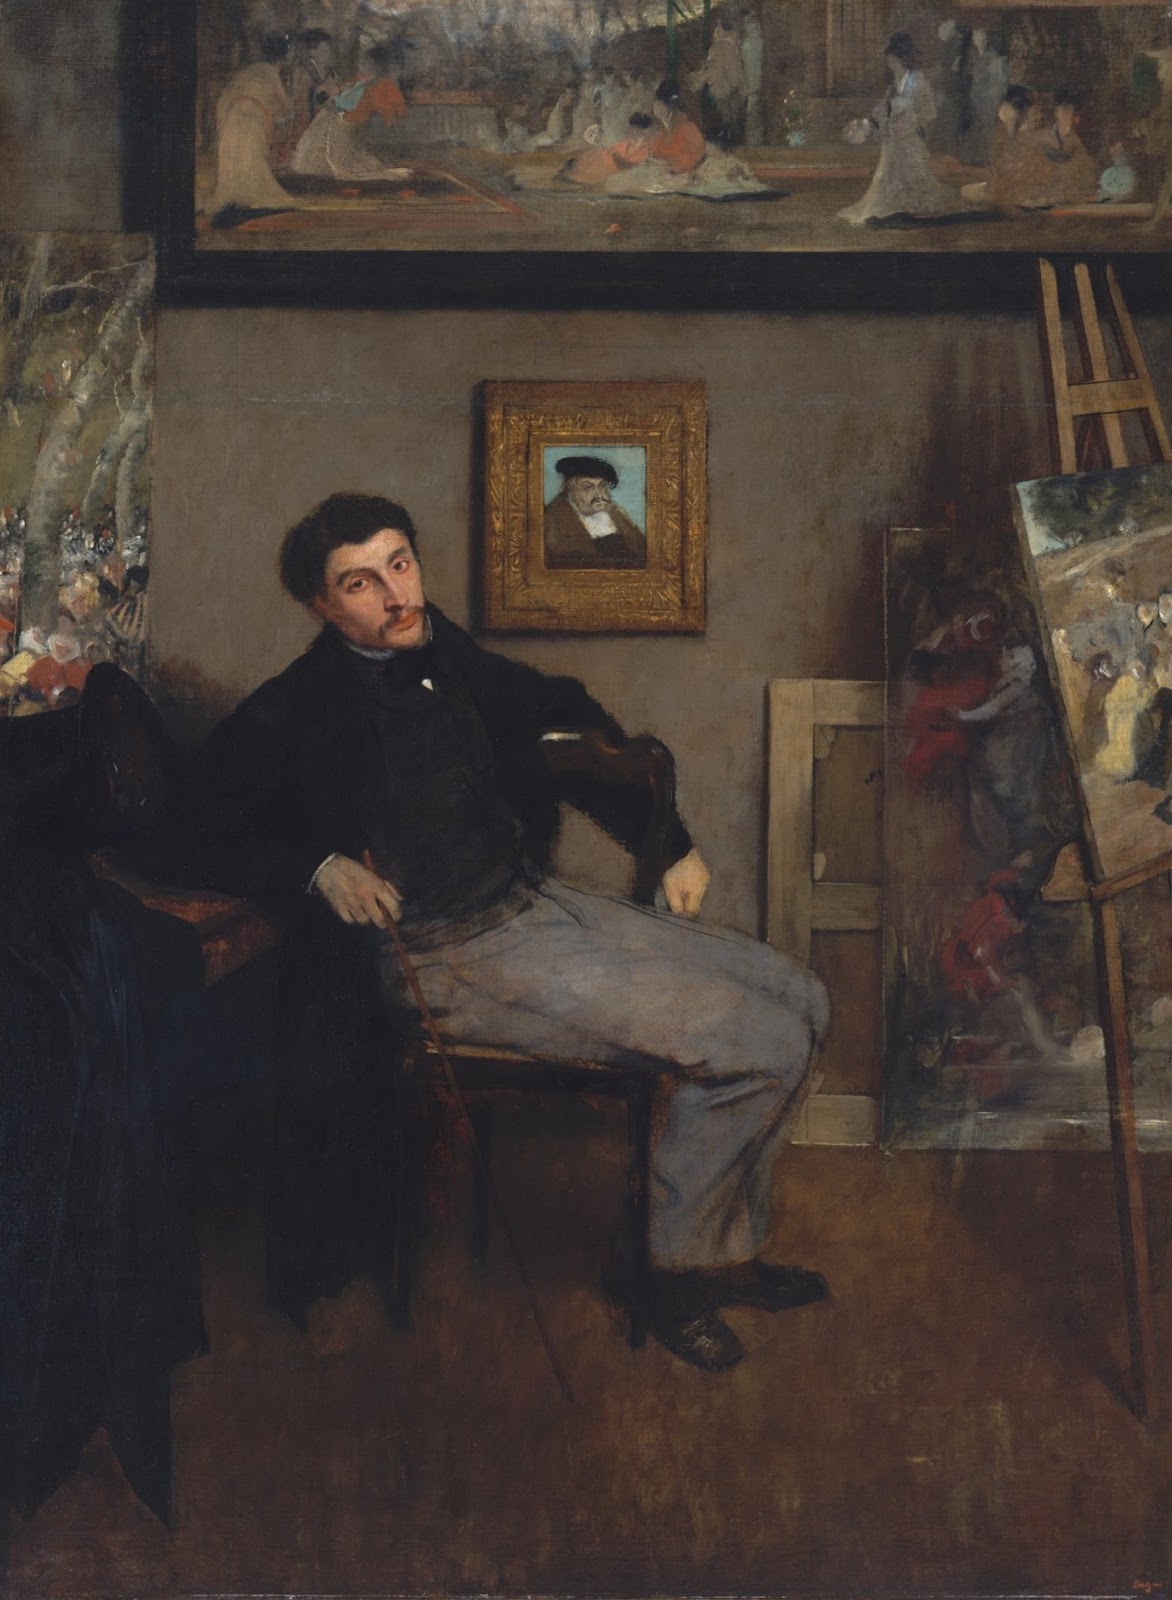 Edgar+Degas-1834-1917 (164).jpg